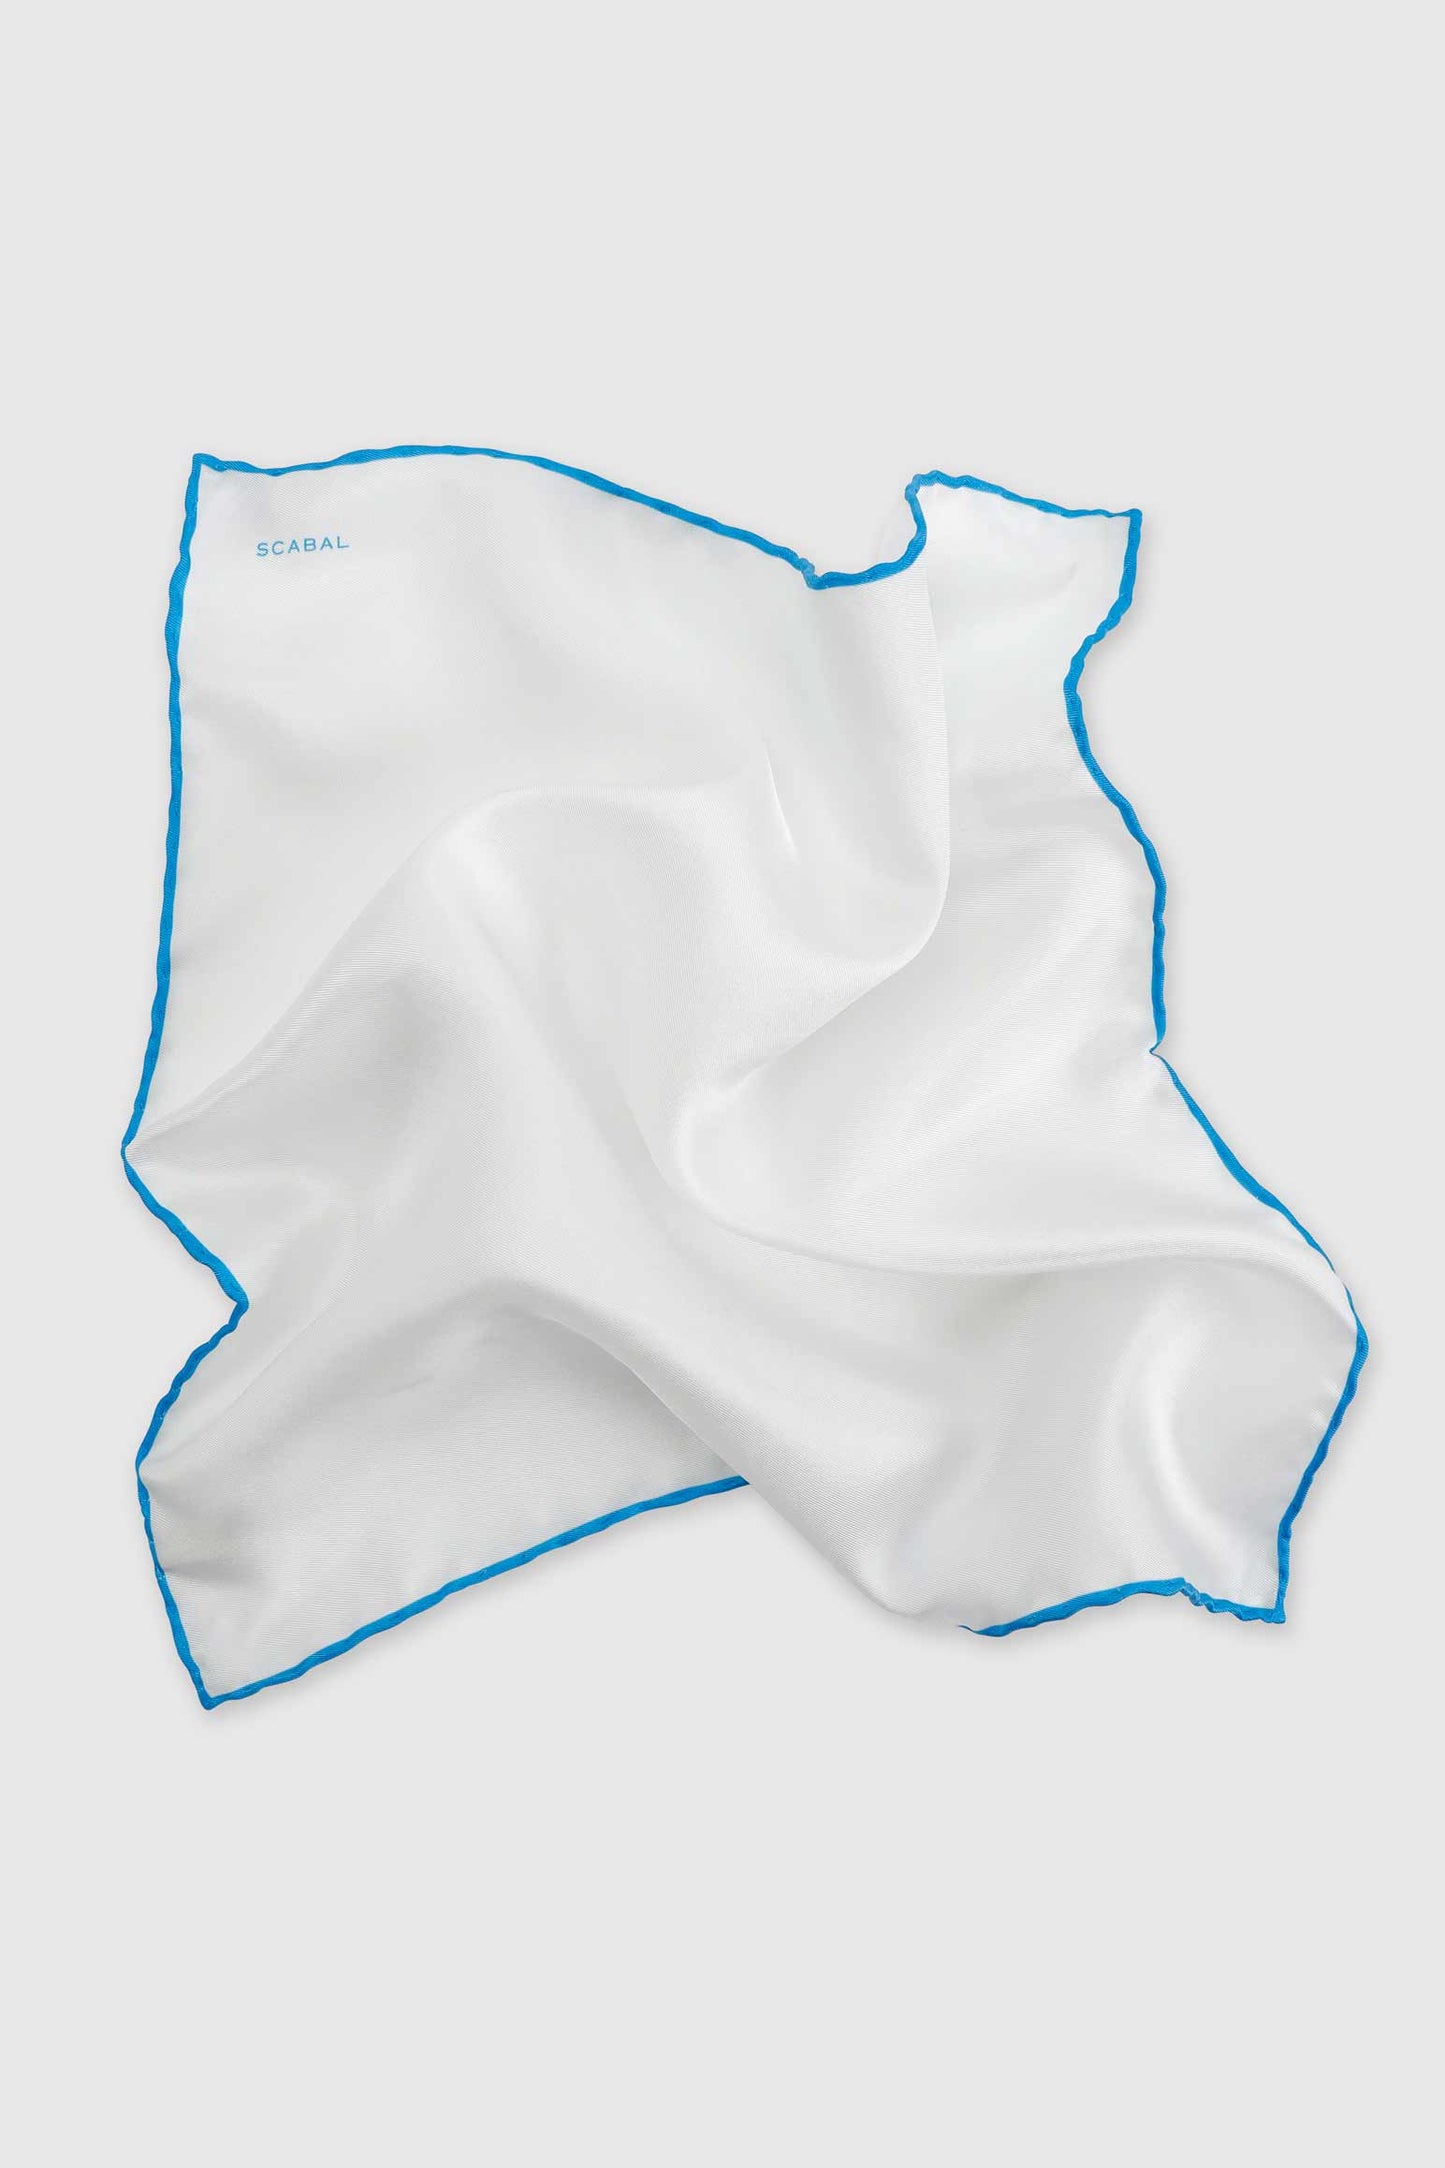 100% Silk Handmade Pocket Square Blue Logo